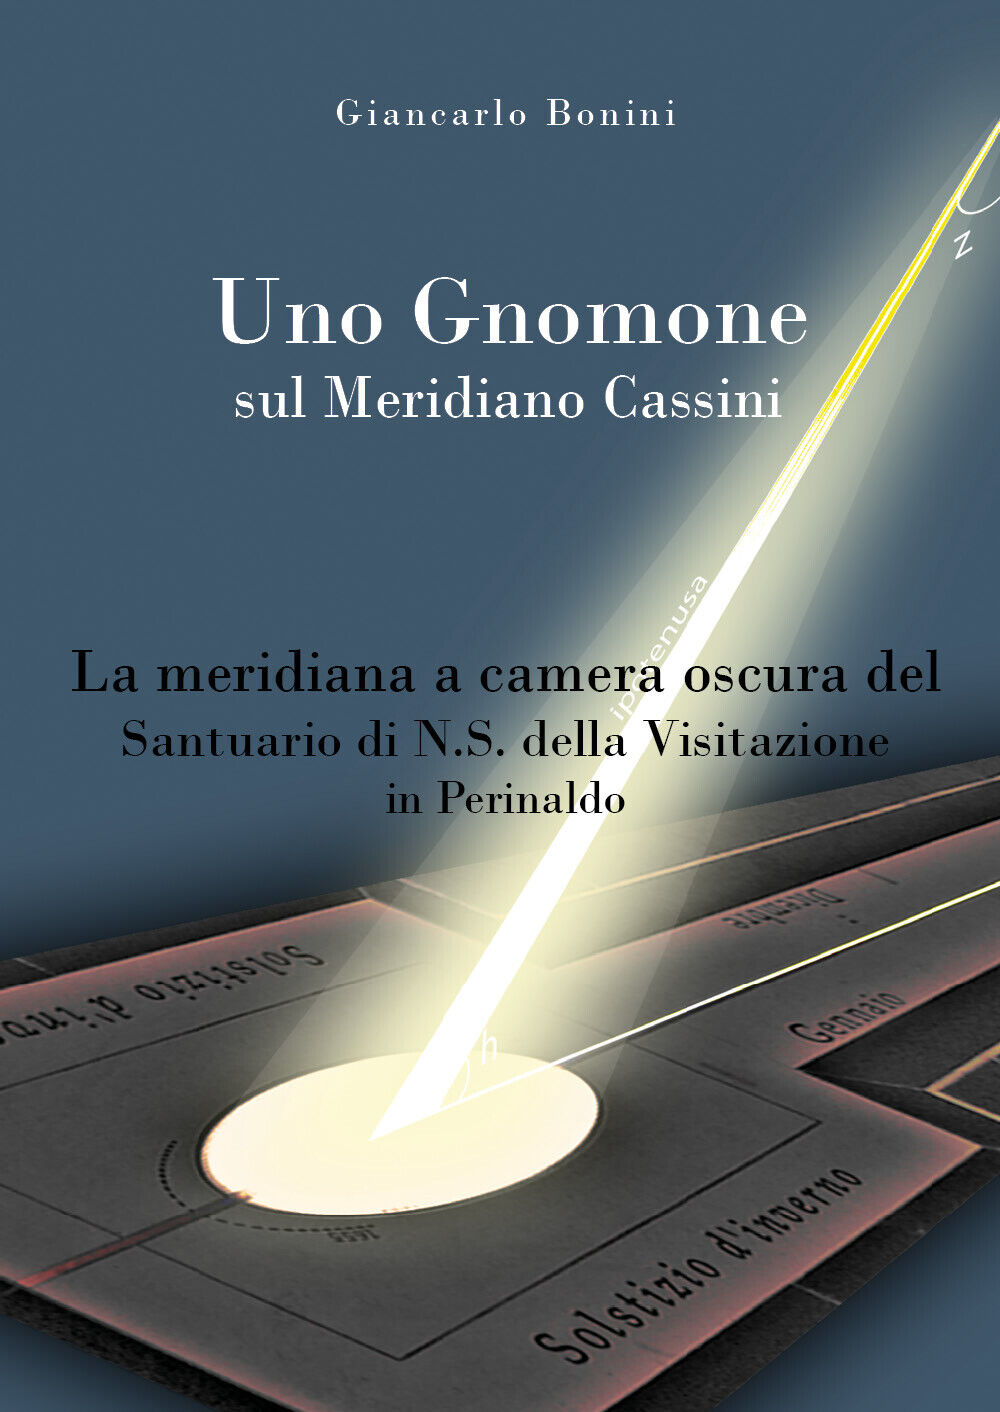 Uno Gnomone sul Meridiano Cassini -  Giancarlo Bonini,  2019,  Youcanprint